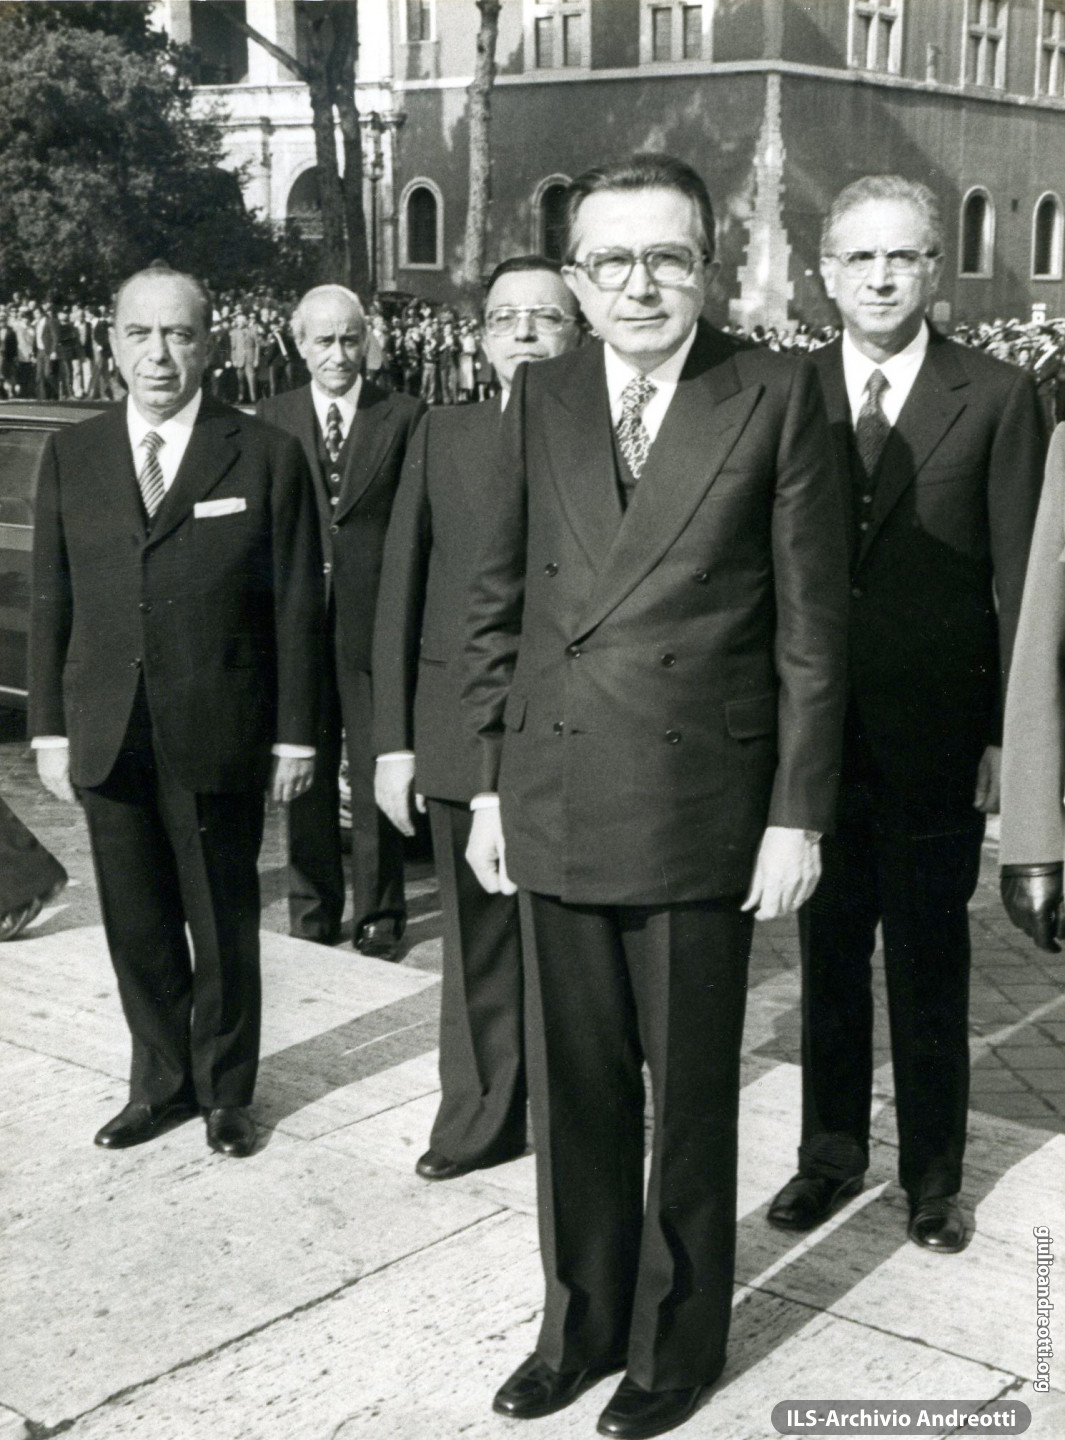 4 novembre 1977. Omaggio al Milite Ignoto con i ministri Morlino, Bonifacio e Cossiga.